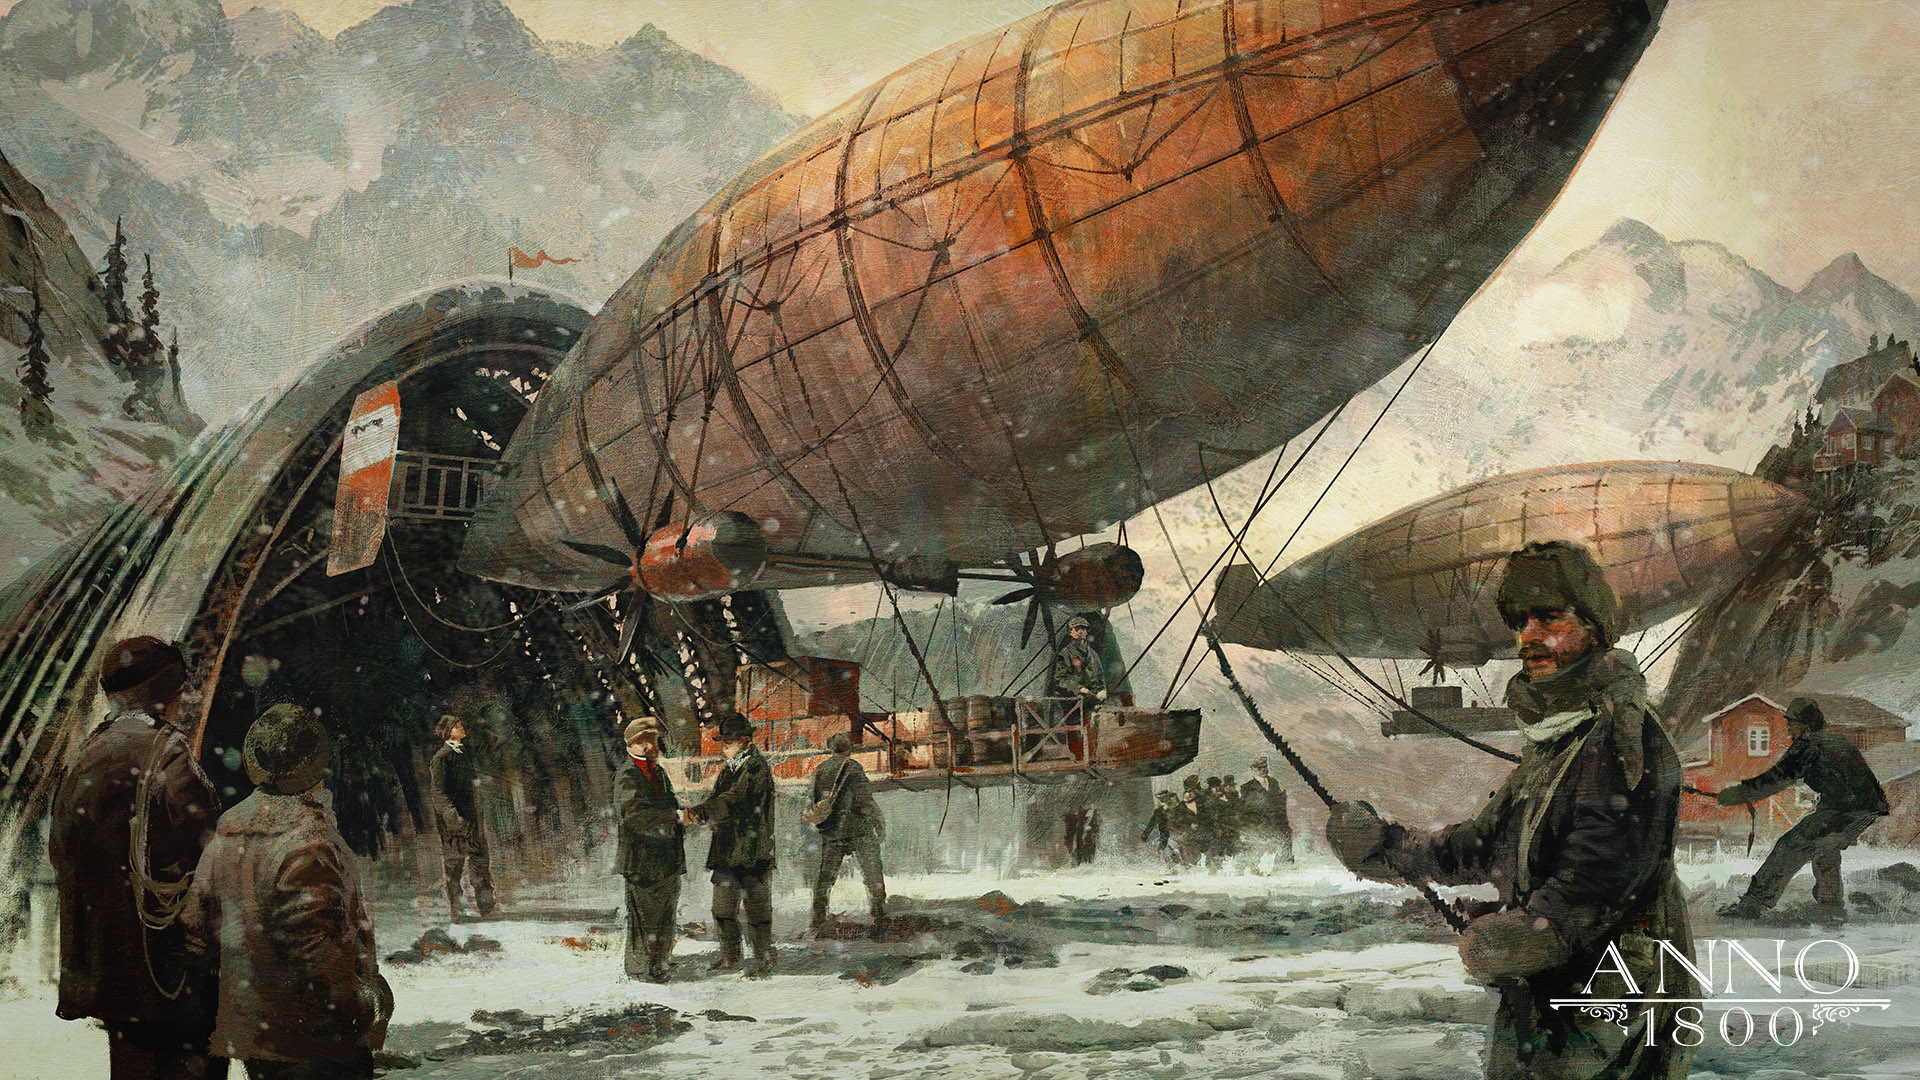 General 1920x1080 Anno 1800 1800s digital art concept art artwork Ubisoft airships Arctic